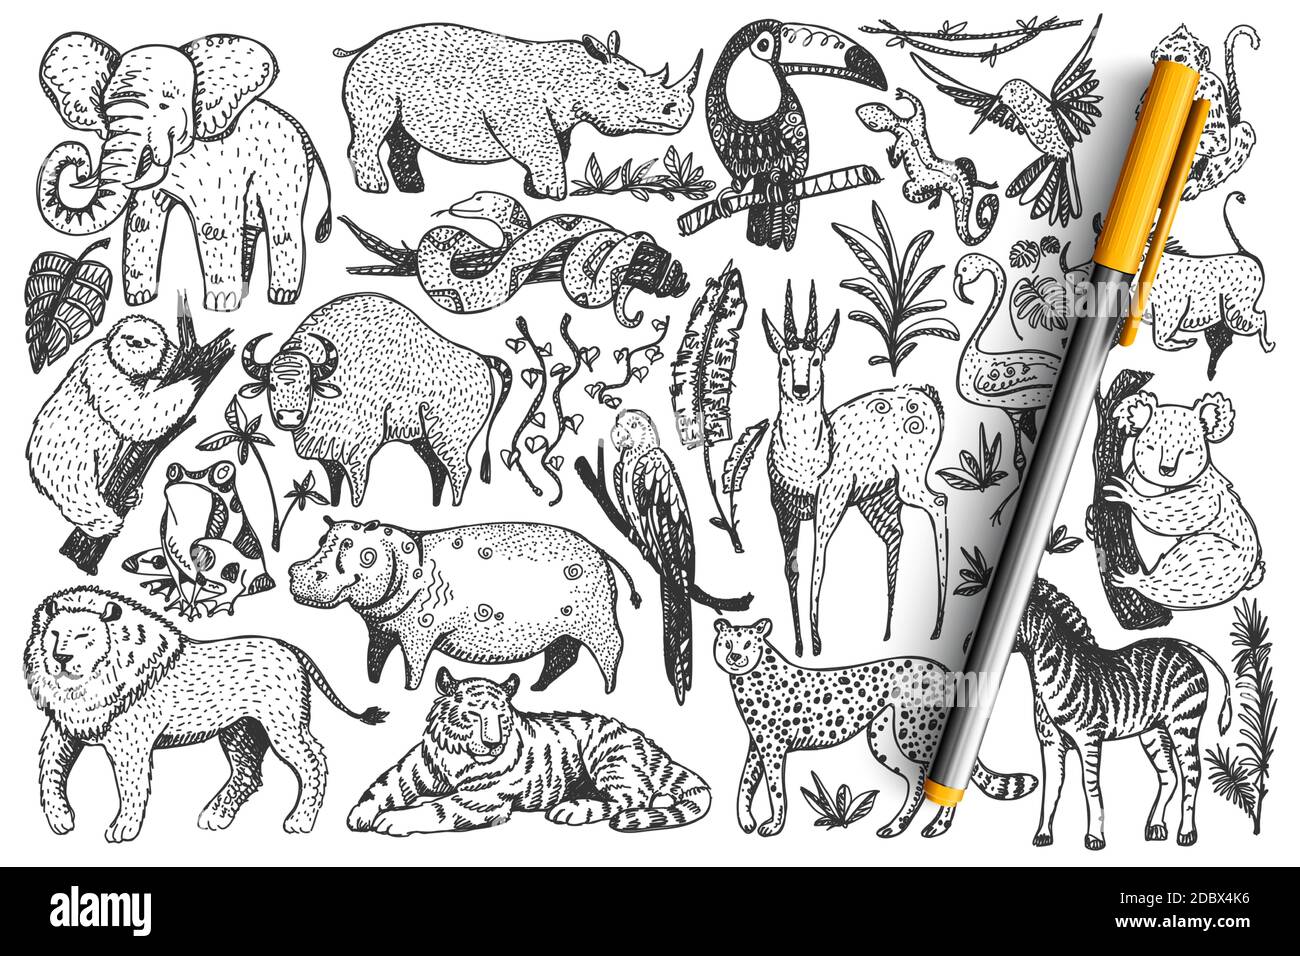 Ensemble de doodle pour animaux. Collection de drôle dessiné à la main de jolis mammifères sauvages de safari africains isolés sur fond blanc. Illustration des serpents de lion léopard singe zèbre girafe éléphant pour les enfants. Illustration de Vecteur